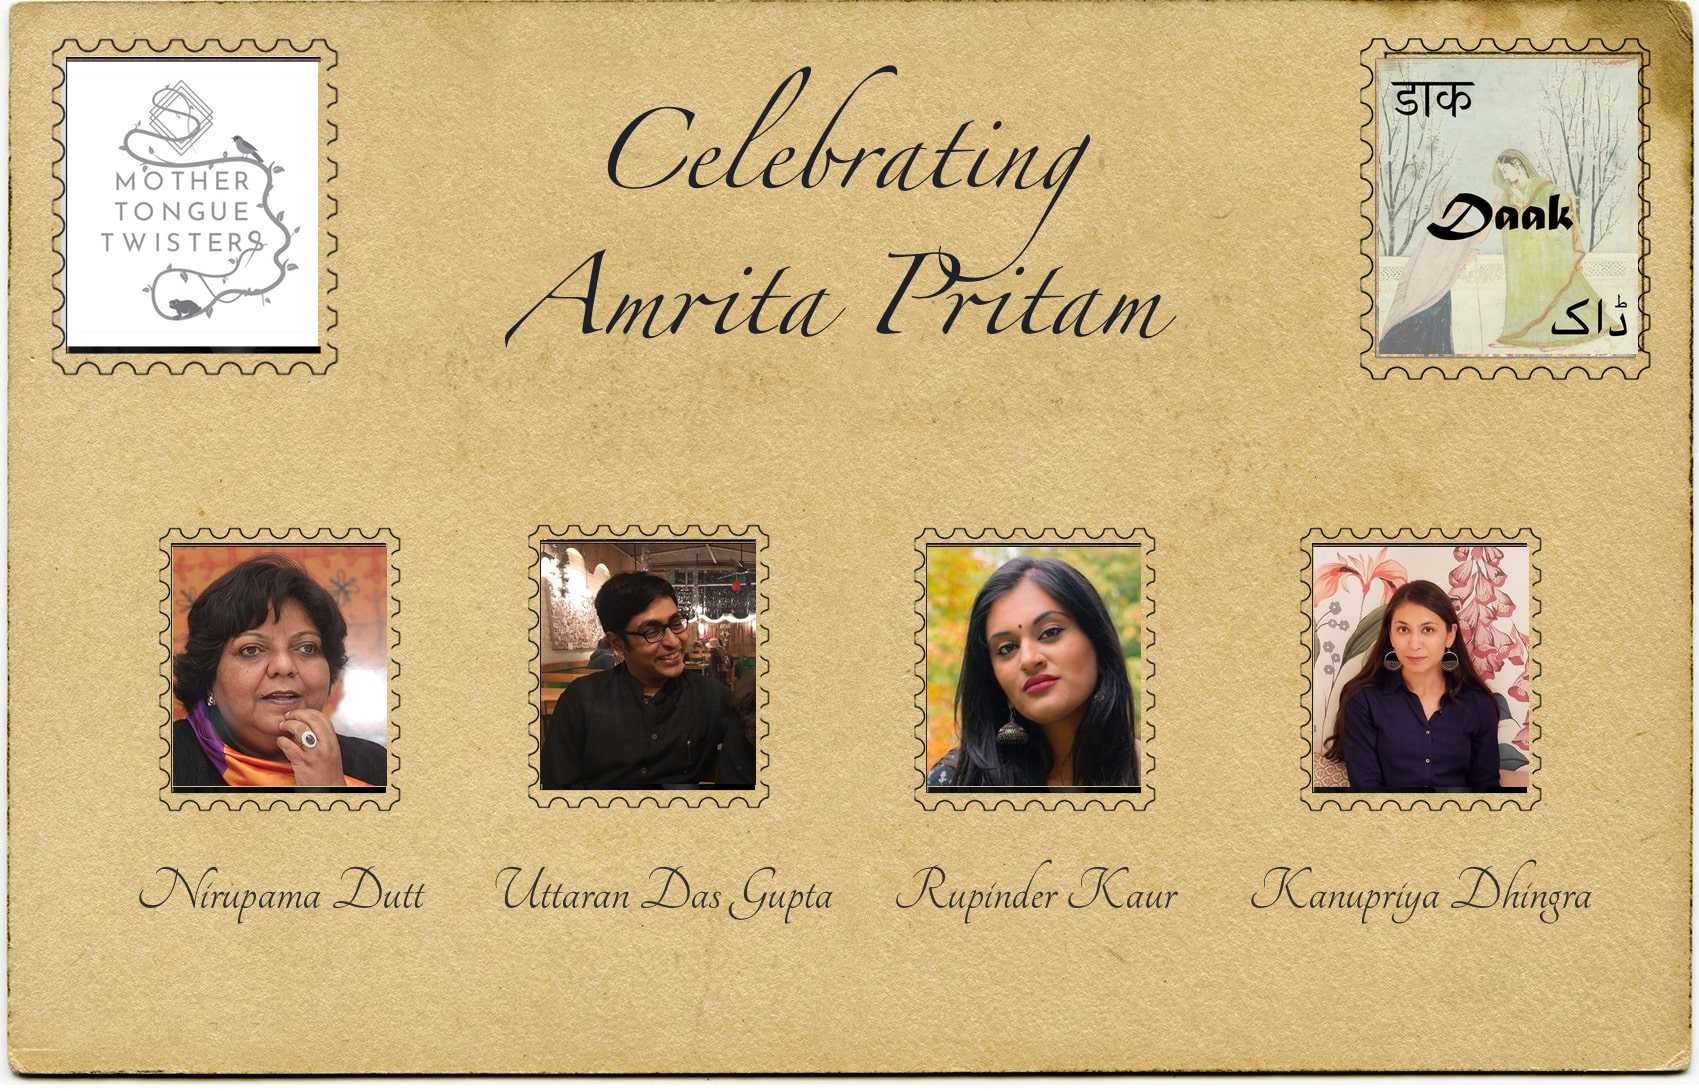 Celebrating Amrita Pritam